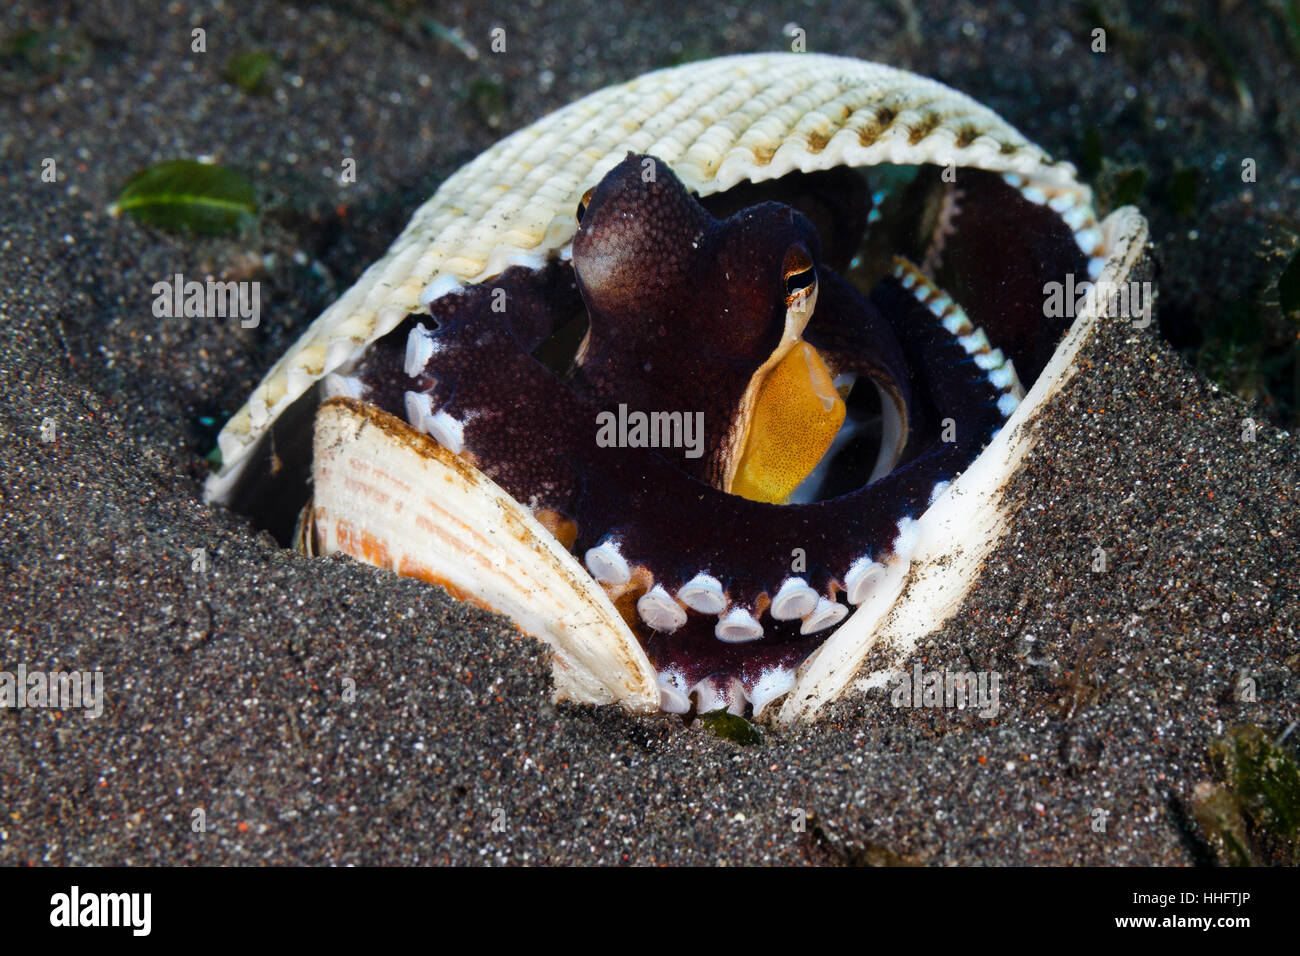 Estrecho de Lembeh, Indonesia.19 de enero de 2017. El Coco pulpo (Amphioctopus marginatus) se suelen utilizar las cáscaras de coco como protección, sin embargo, son igualmente en casa escondidos dentro de una shell como este pulpo fue hoy en el estrecho de Lembeh, al norte de Sulawesi, Indonesia Crédito: Ed Brown/Alamy Live News Foto de stock